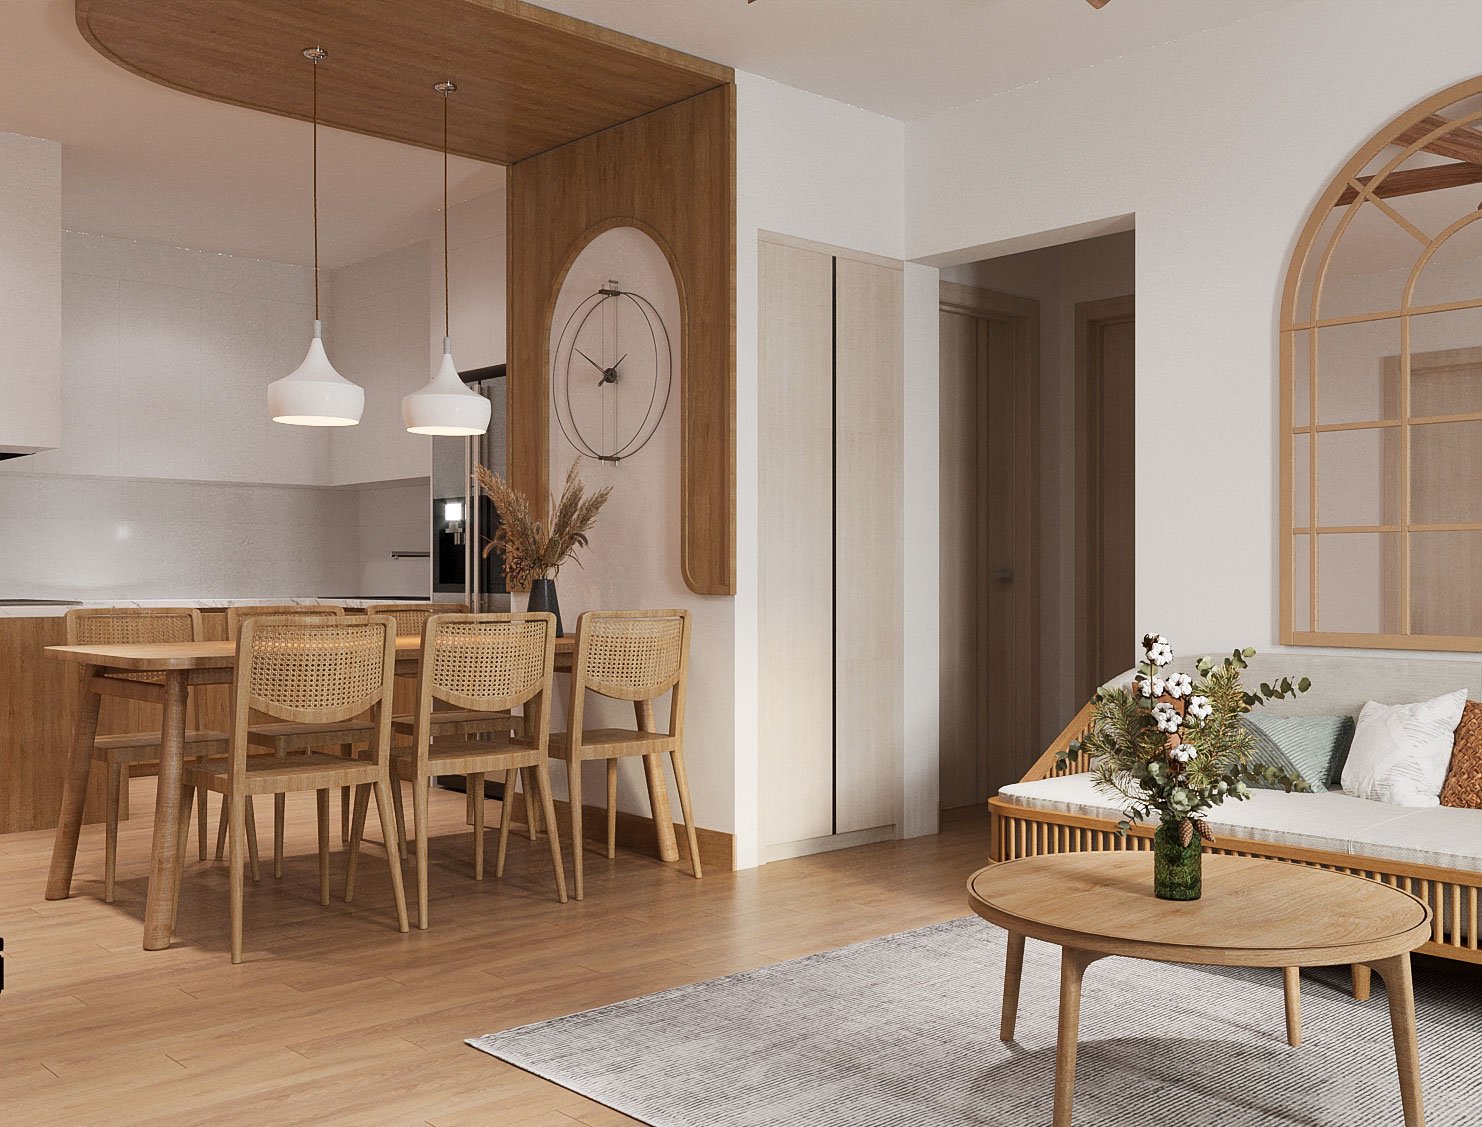 Dễ dàng nhận thấy, trong căn hộ này, kiến trúc sư sử dụng nhiều chi tiết hình vòm, từ lối vào, phòng khách, đến bếp - ăn mang lại cảm giác mềm mại, nhẹ nhàng.